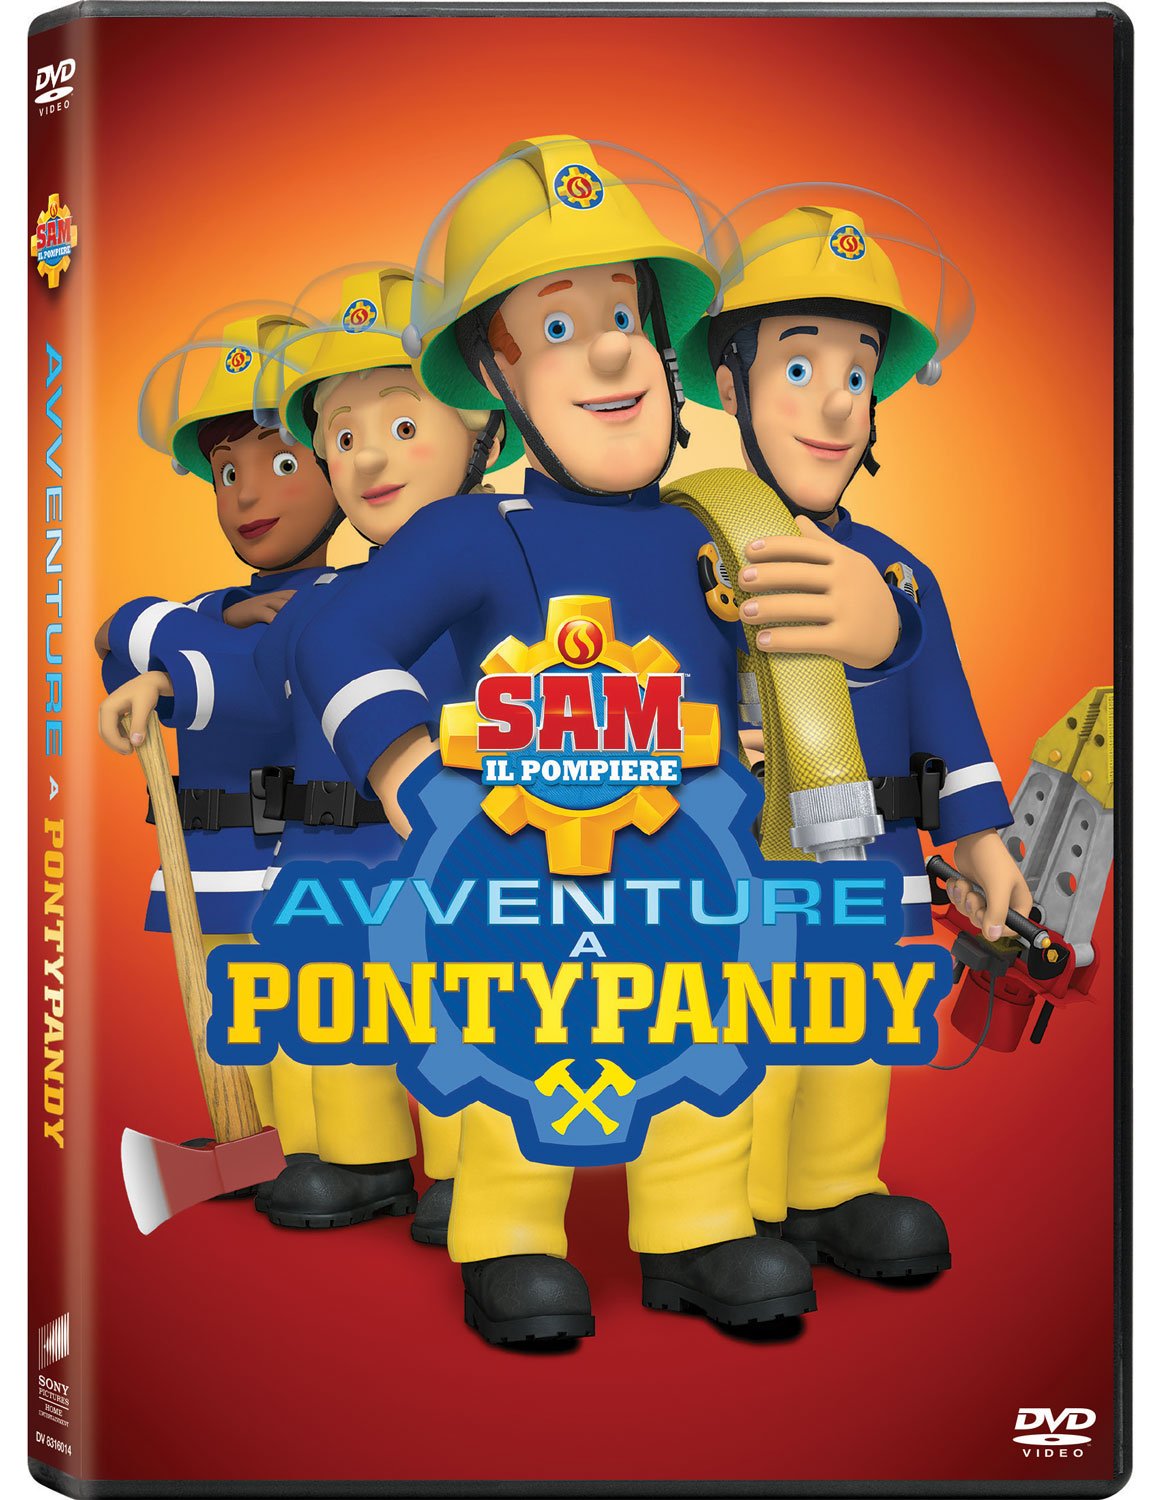 Sam il pompiere avventure a Pontypandy